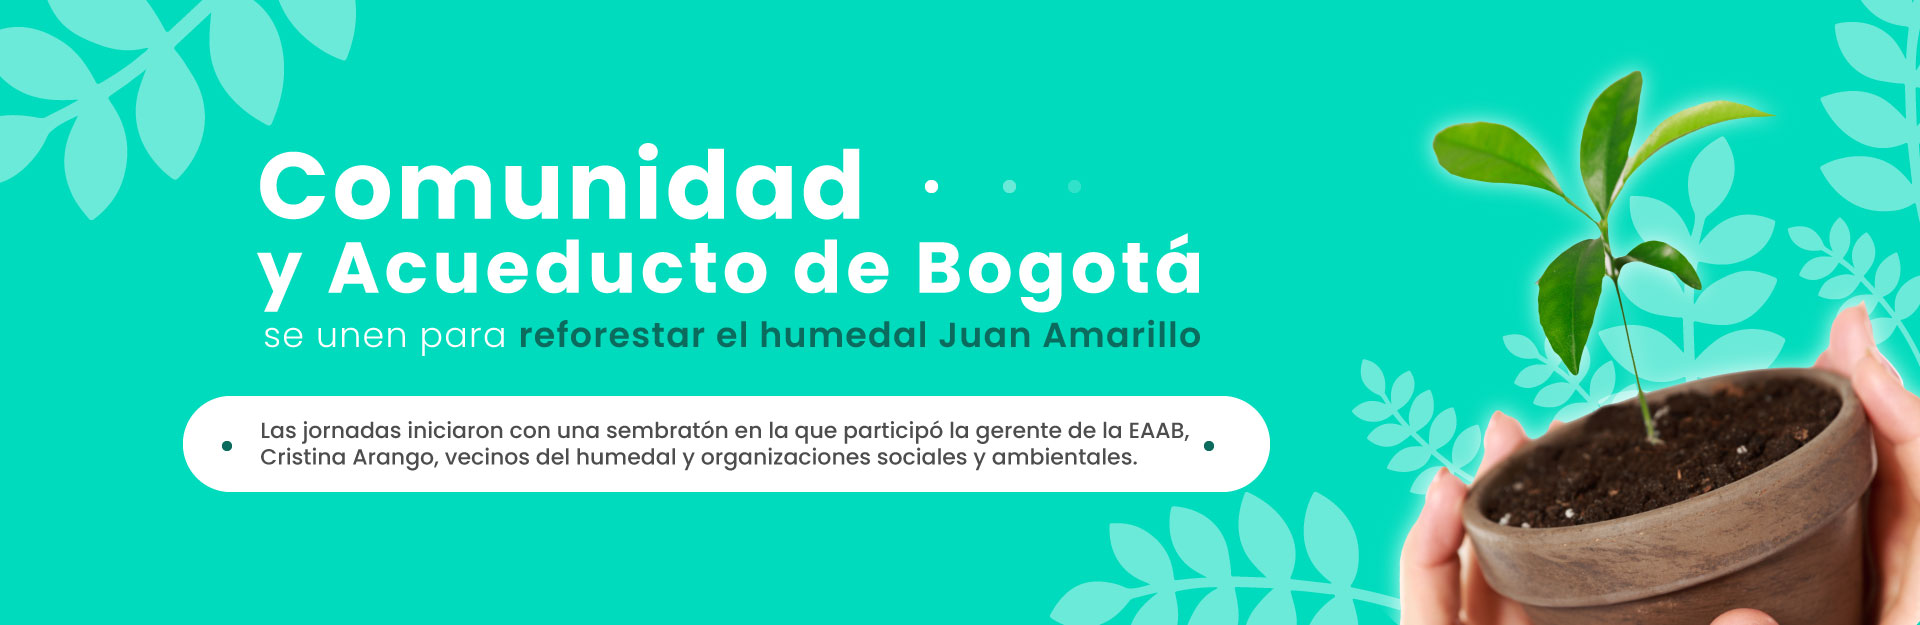 Comunidad y Acueducto de Bogotá se unen para reforestar el humedal Juan Amarillo